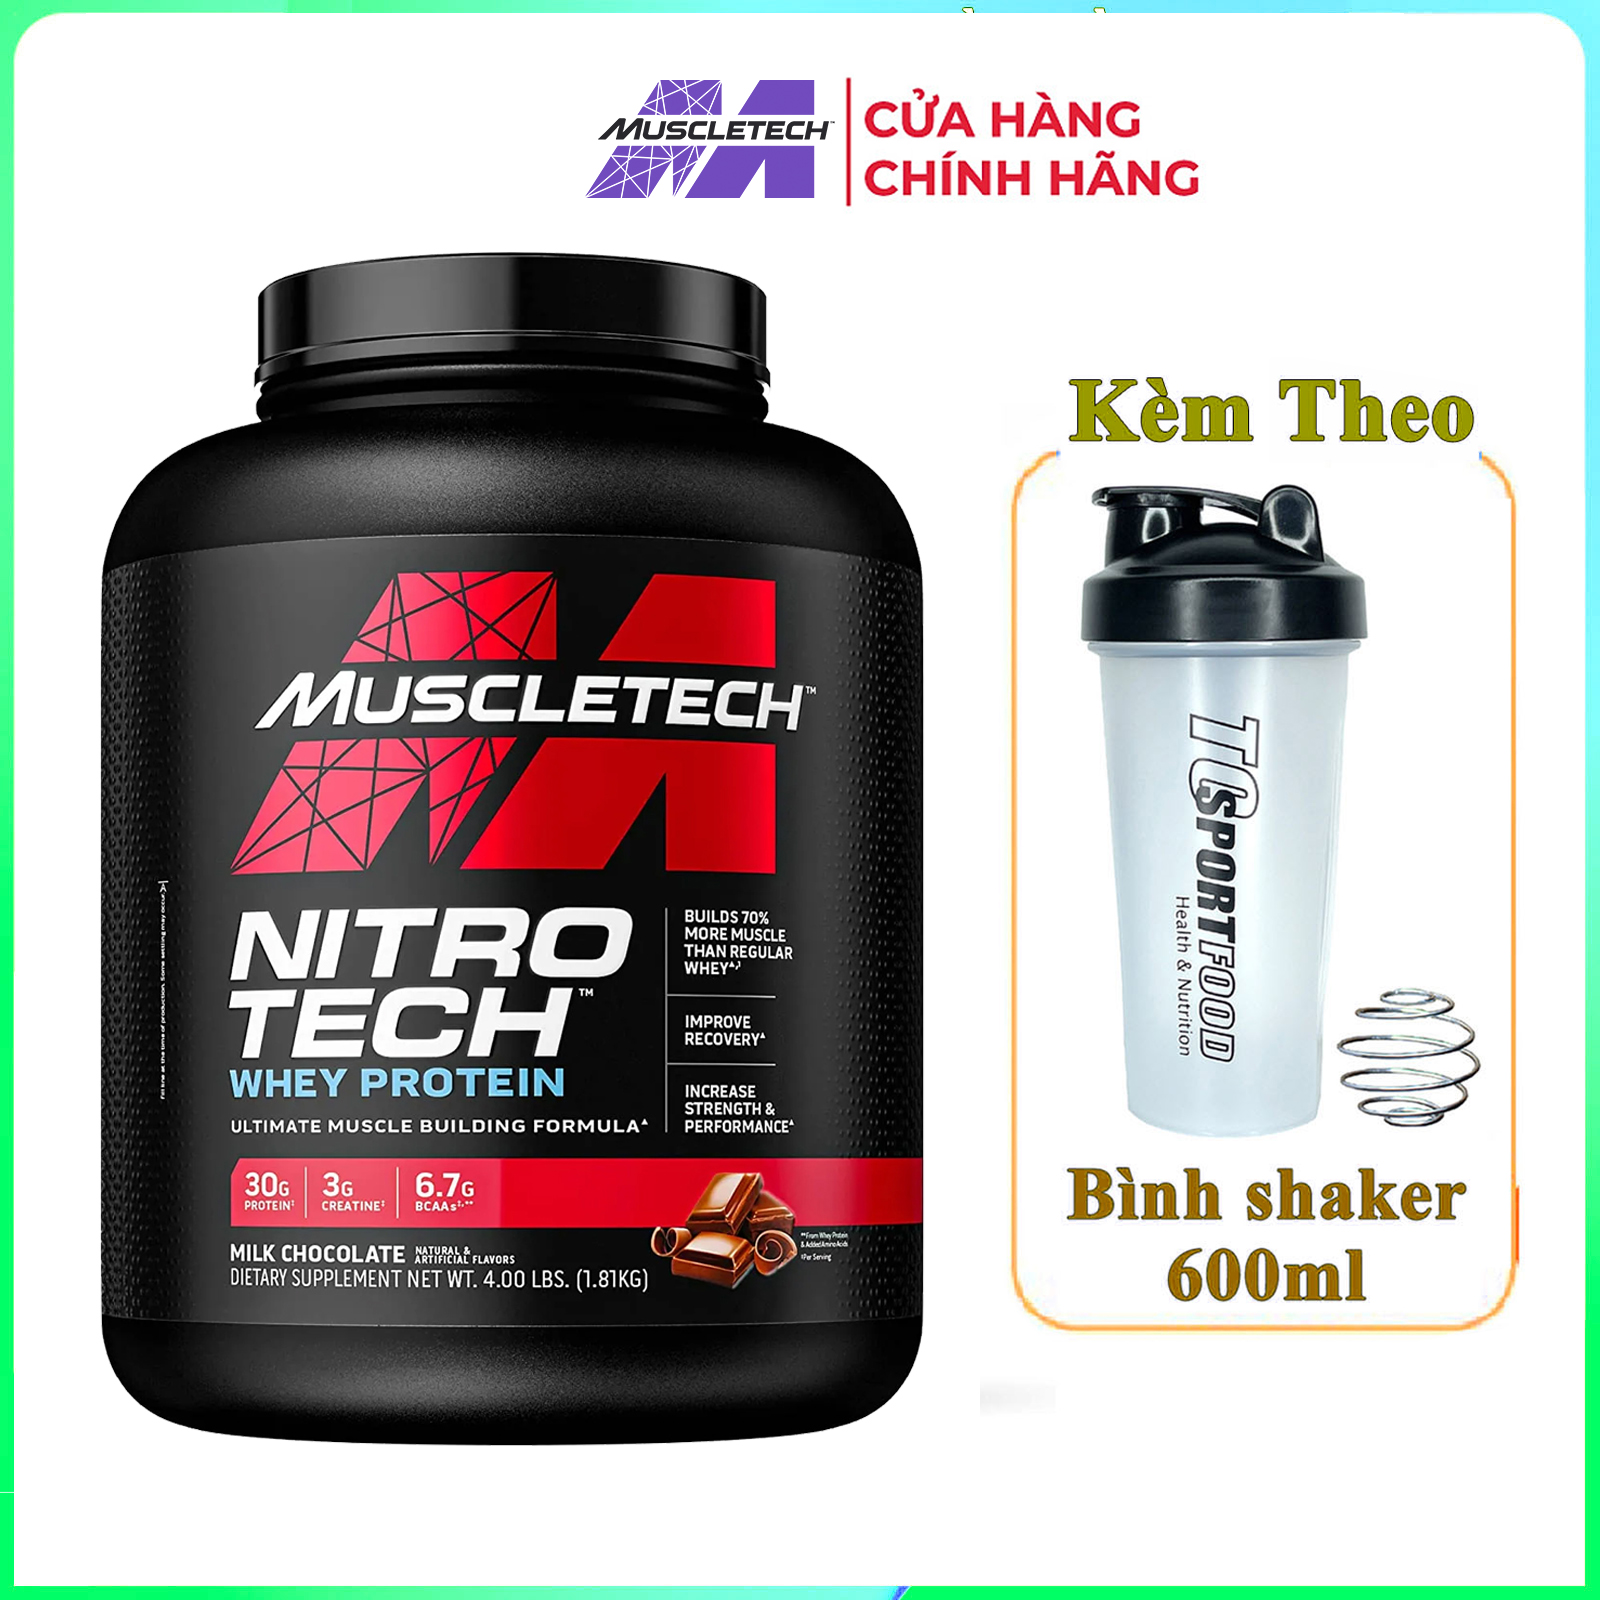 [HCM][FREE SHAKER] Sữa tăng cơ cực mạnh Whey Protein Nitro Tech của MuscleTech hộp 1.8kg hỗ trợ tăng cơ giảm cân giảm mỡ bụng tăng sức bền sức mạnh vượt trội cho người tập GYM và chơi thể thao thumbnail